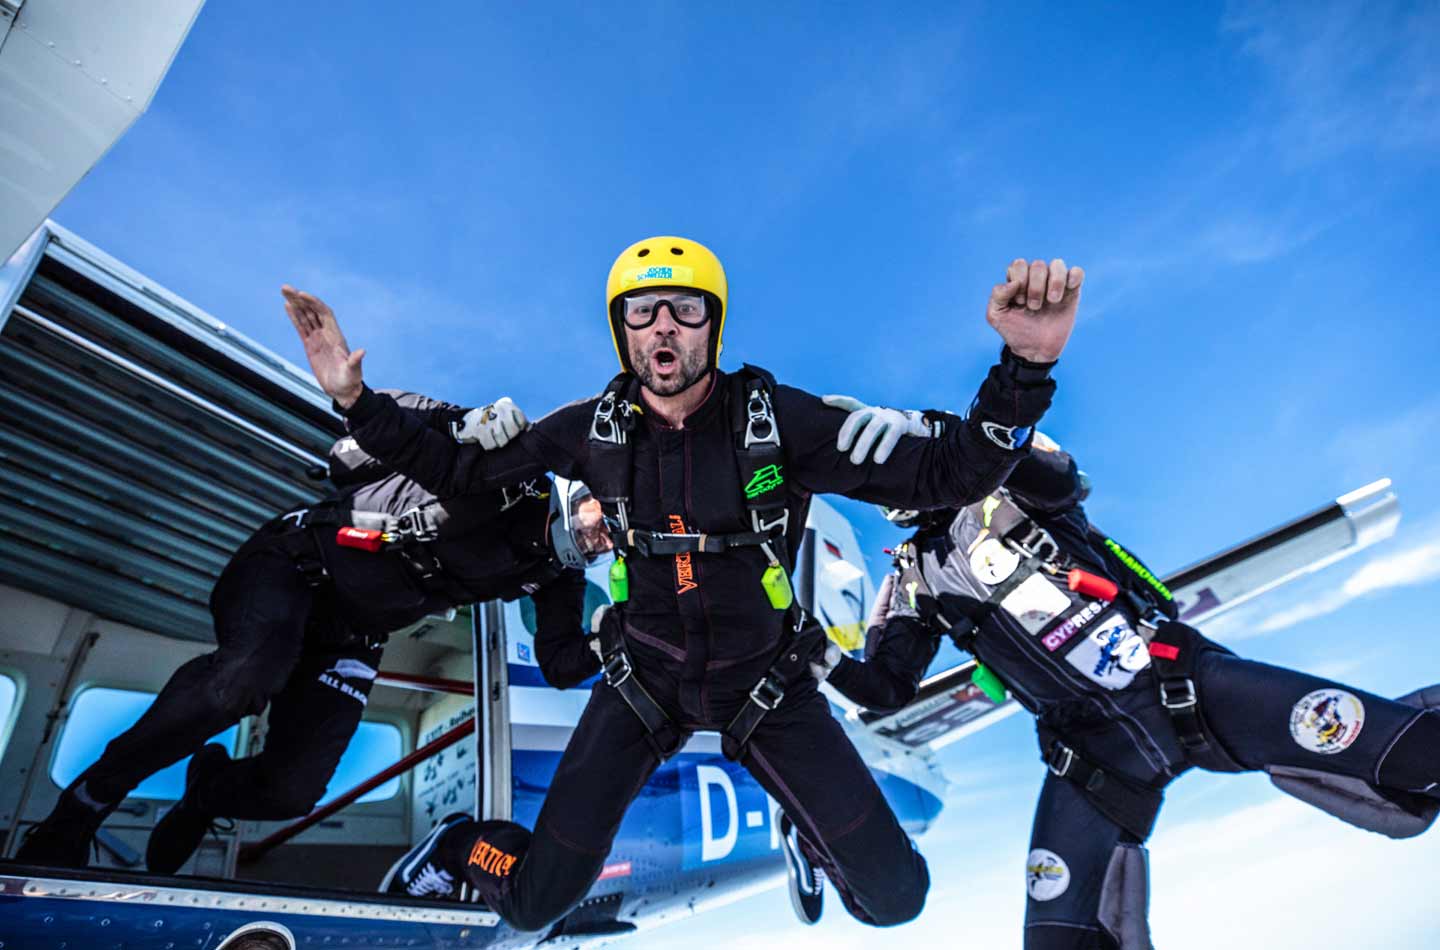 Extremsport Fallschirmspringen: Sprung aus dem Flugzeug